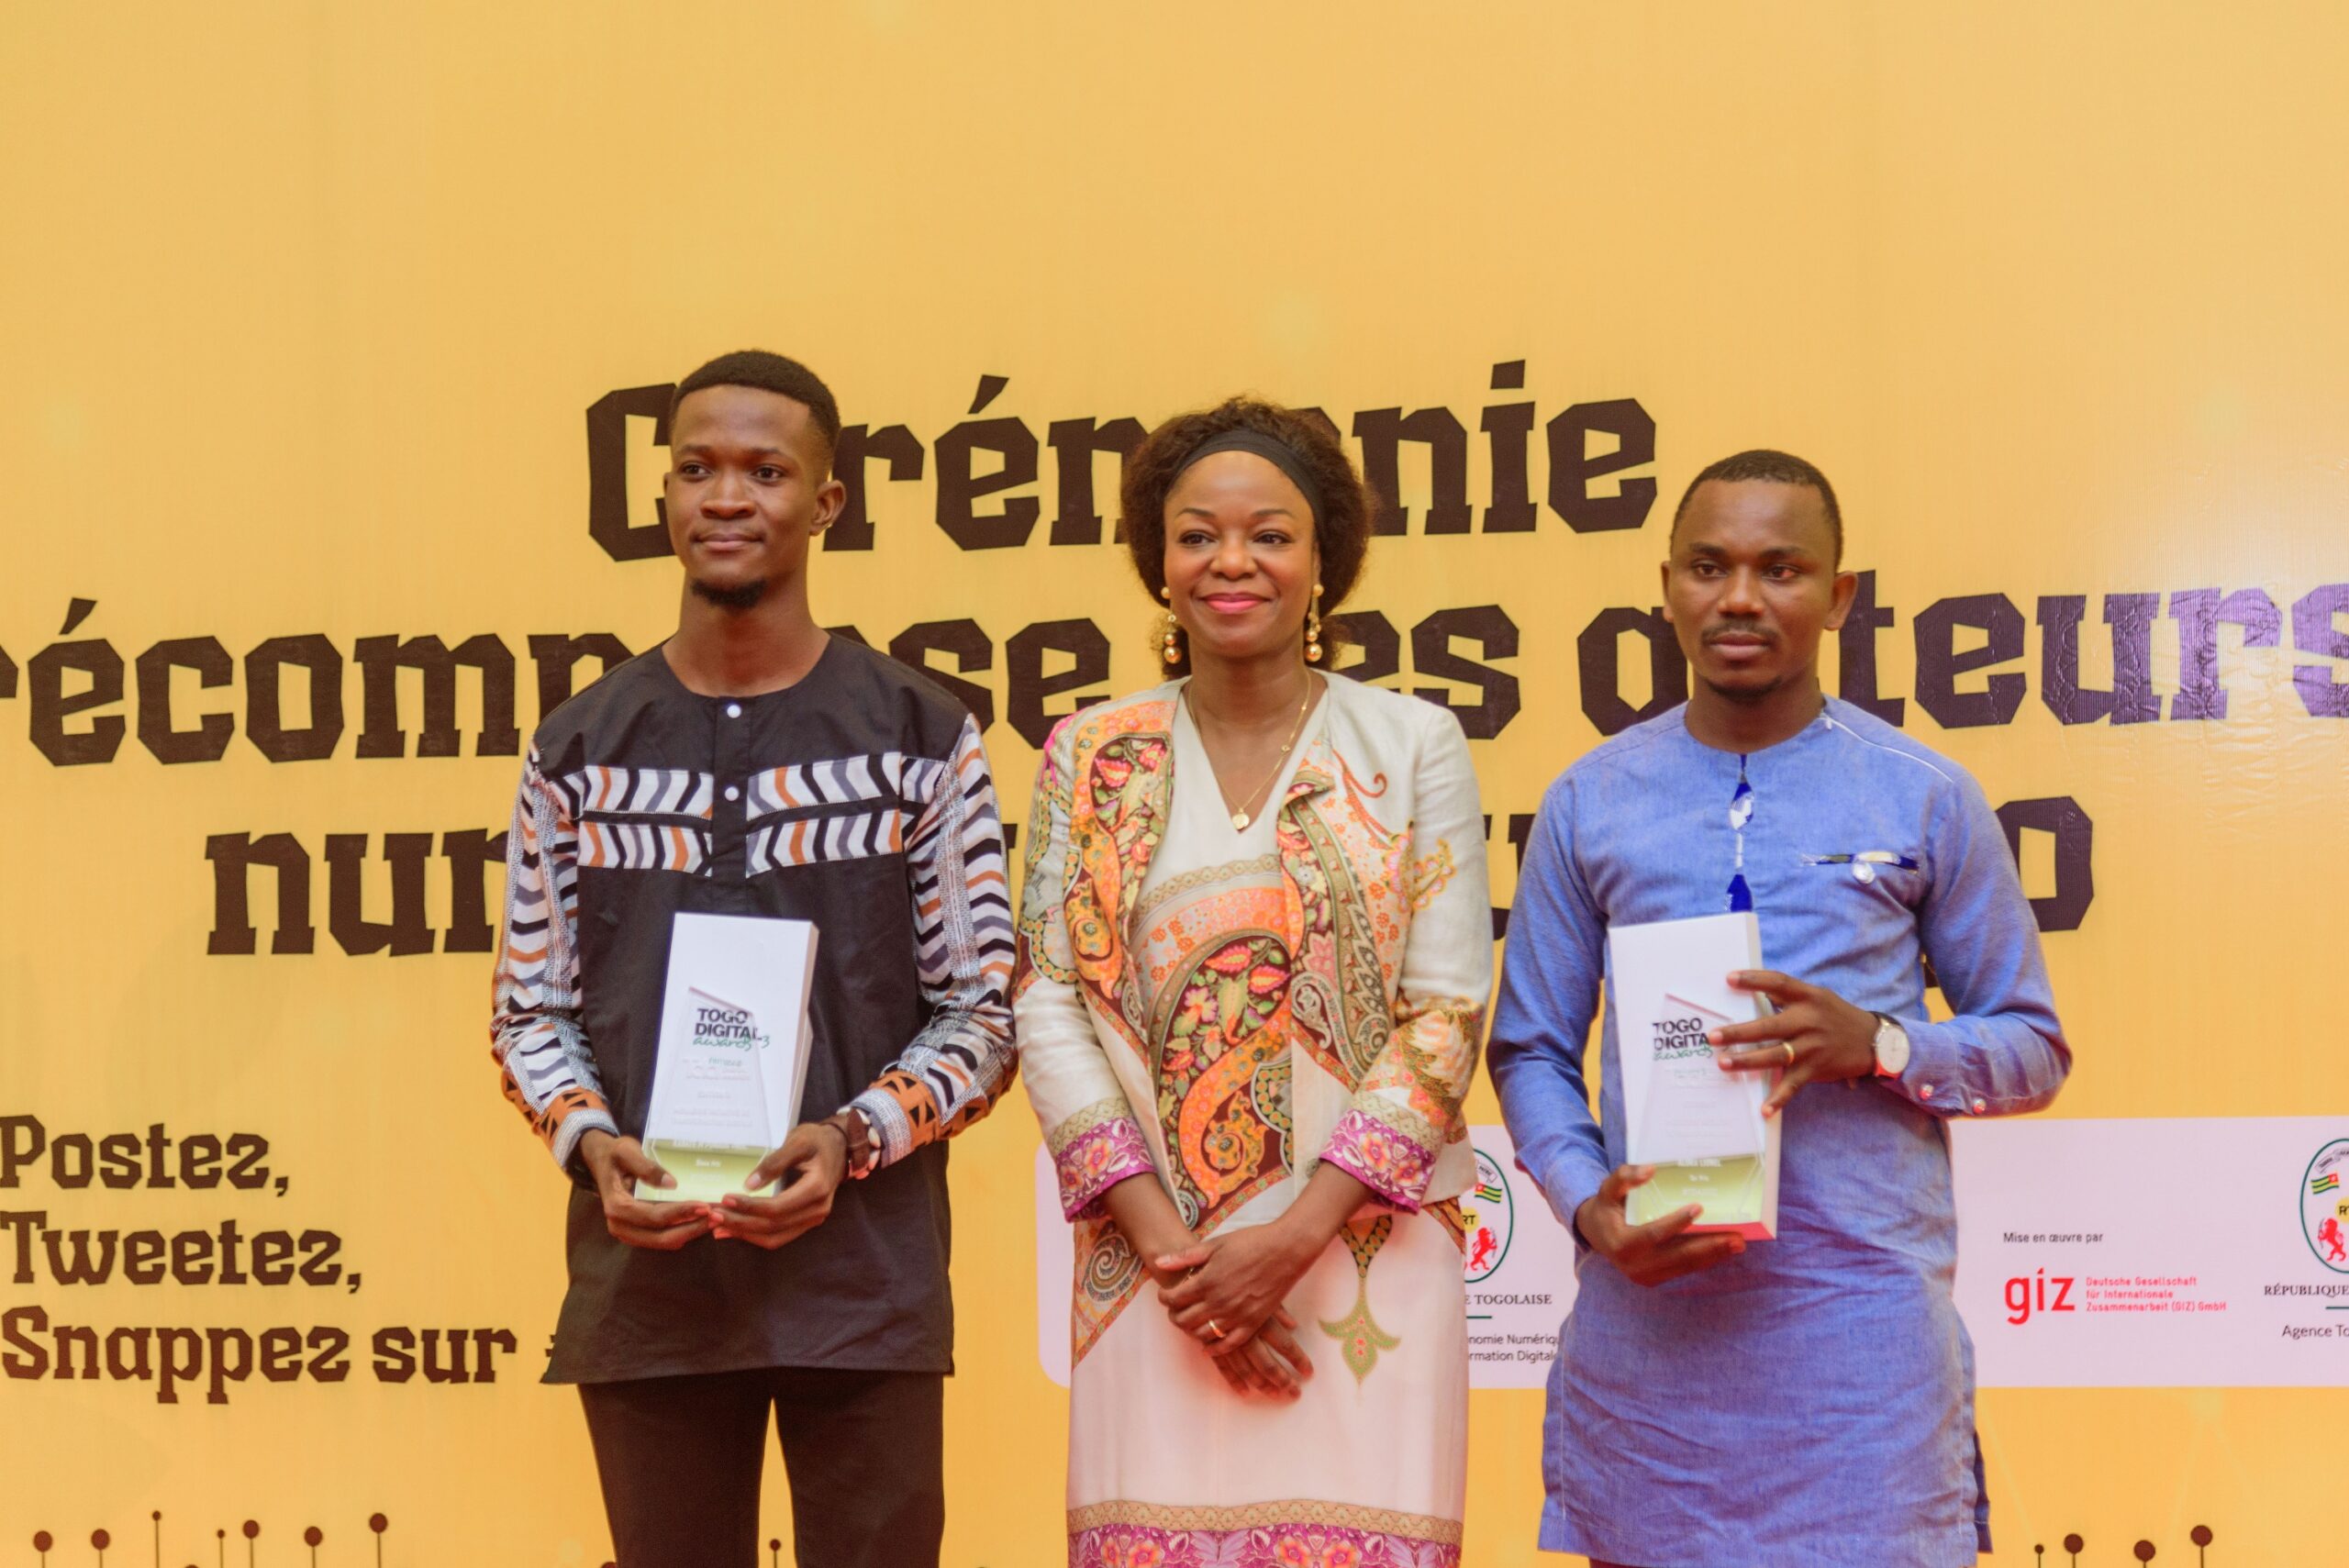 L’événement consacré à l'innovation, Togo Digital Awards a marqué le coup lors de sa troisième édition en décernant des prix hors du commun